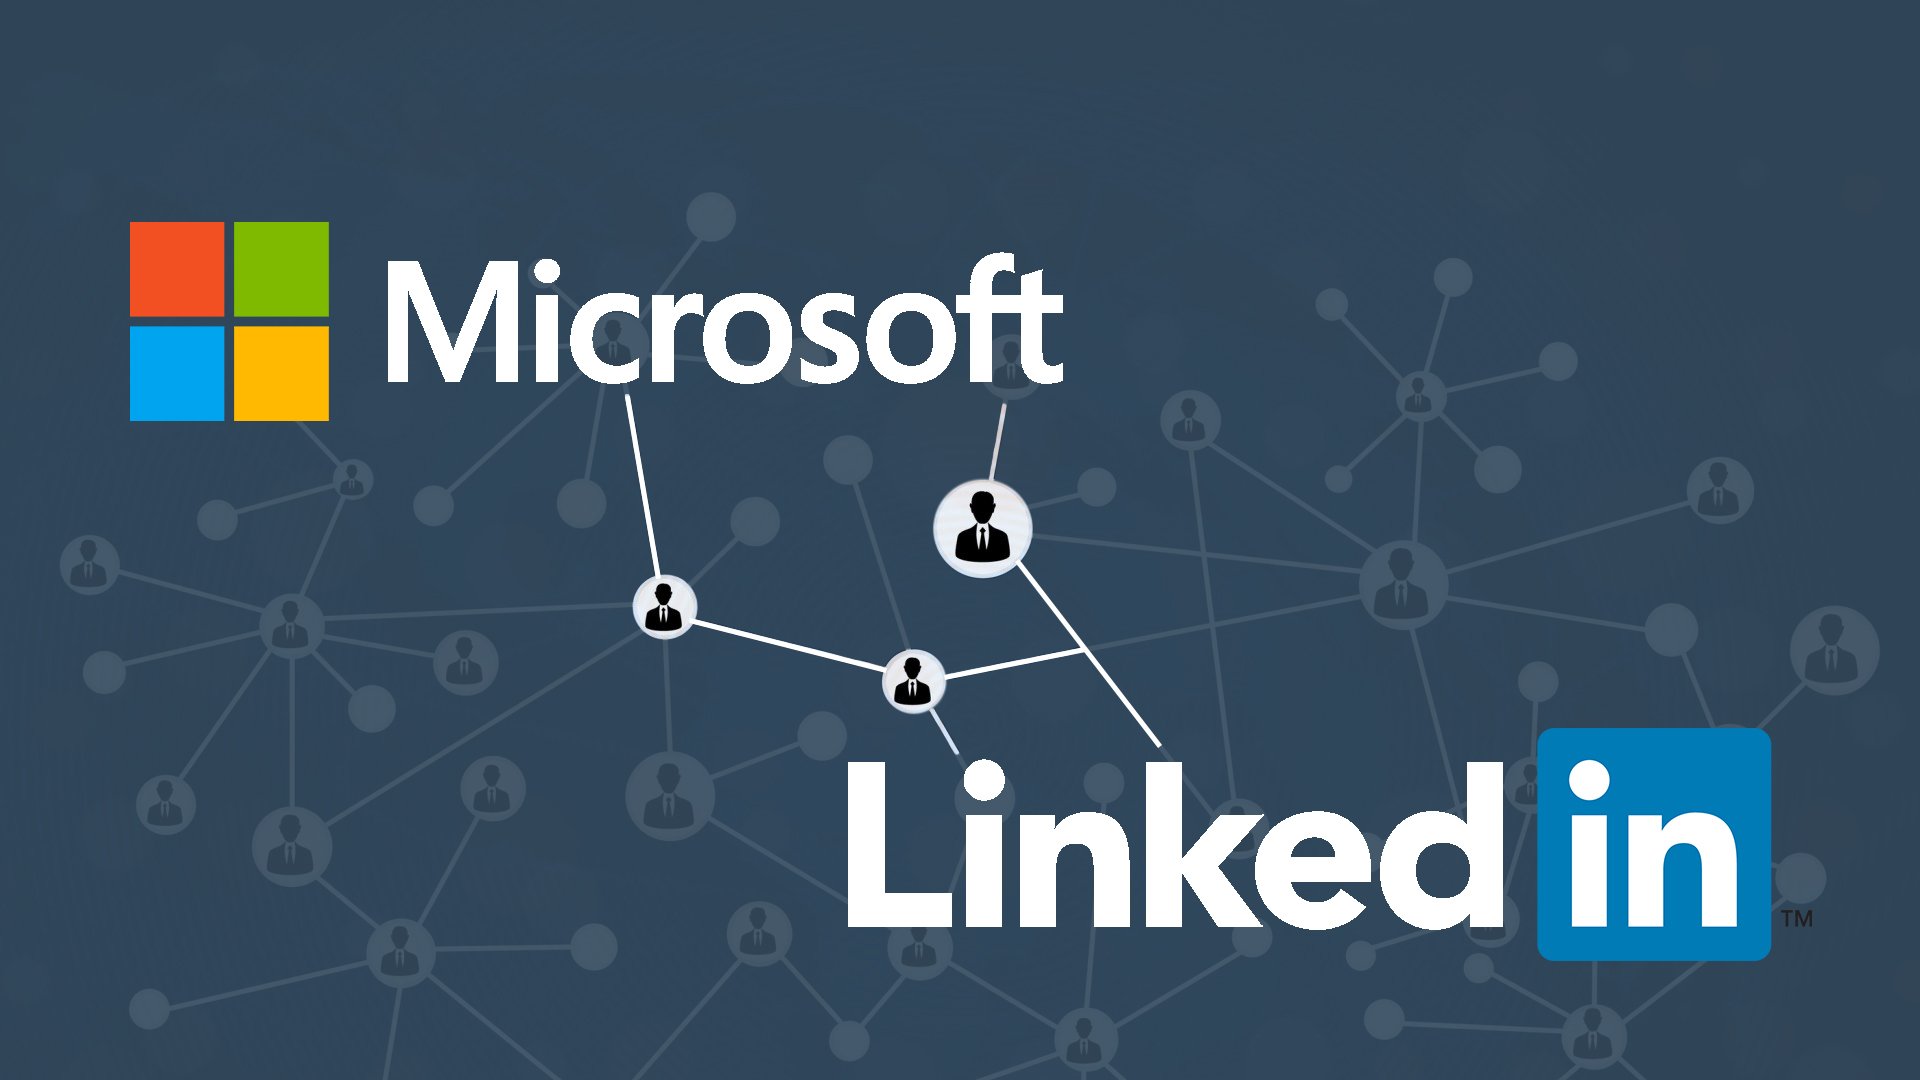 Forma't gratis de la mà de LinkedIn i Microsoft